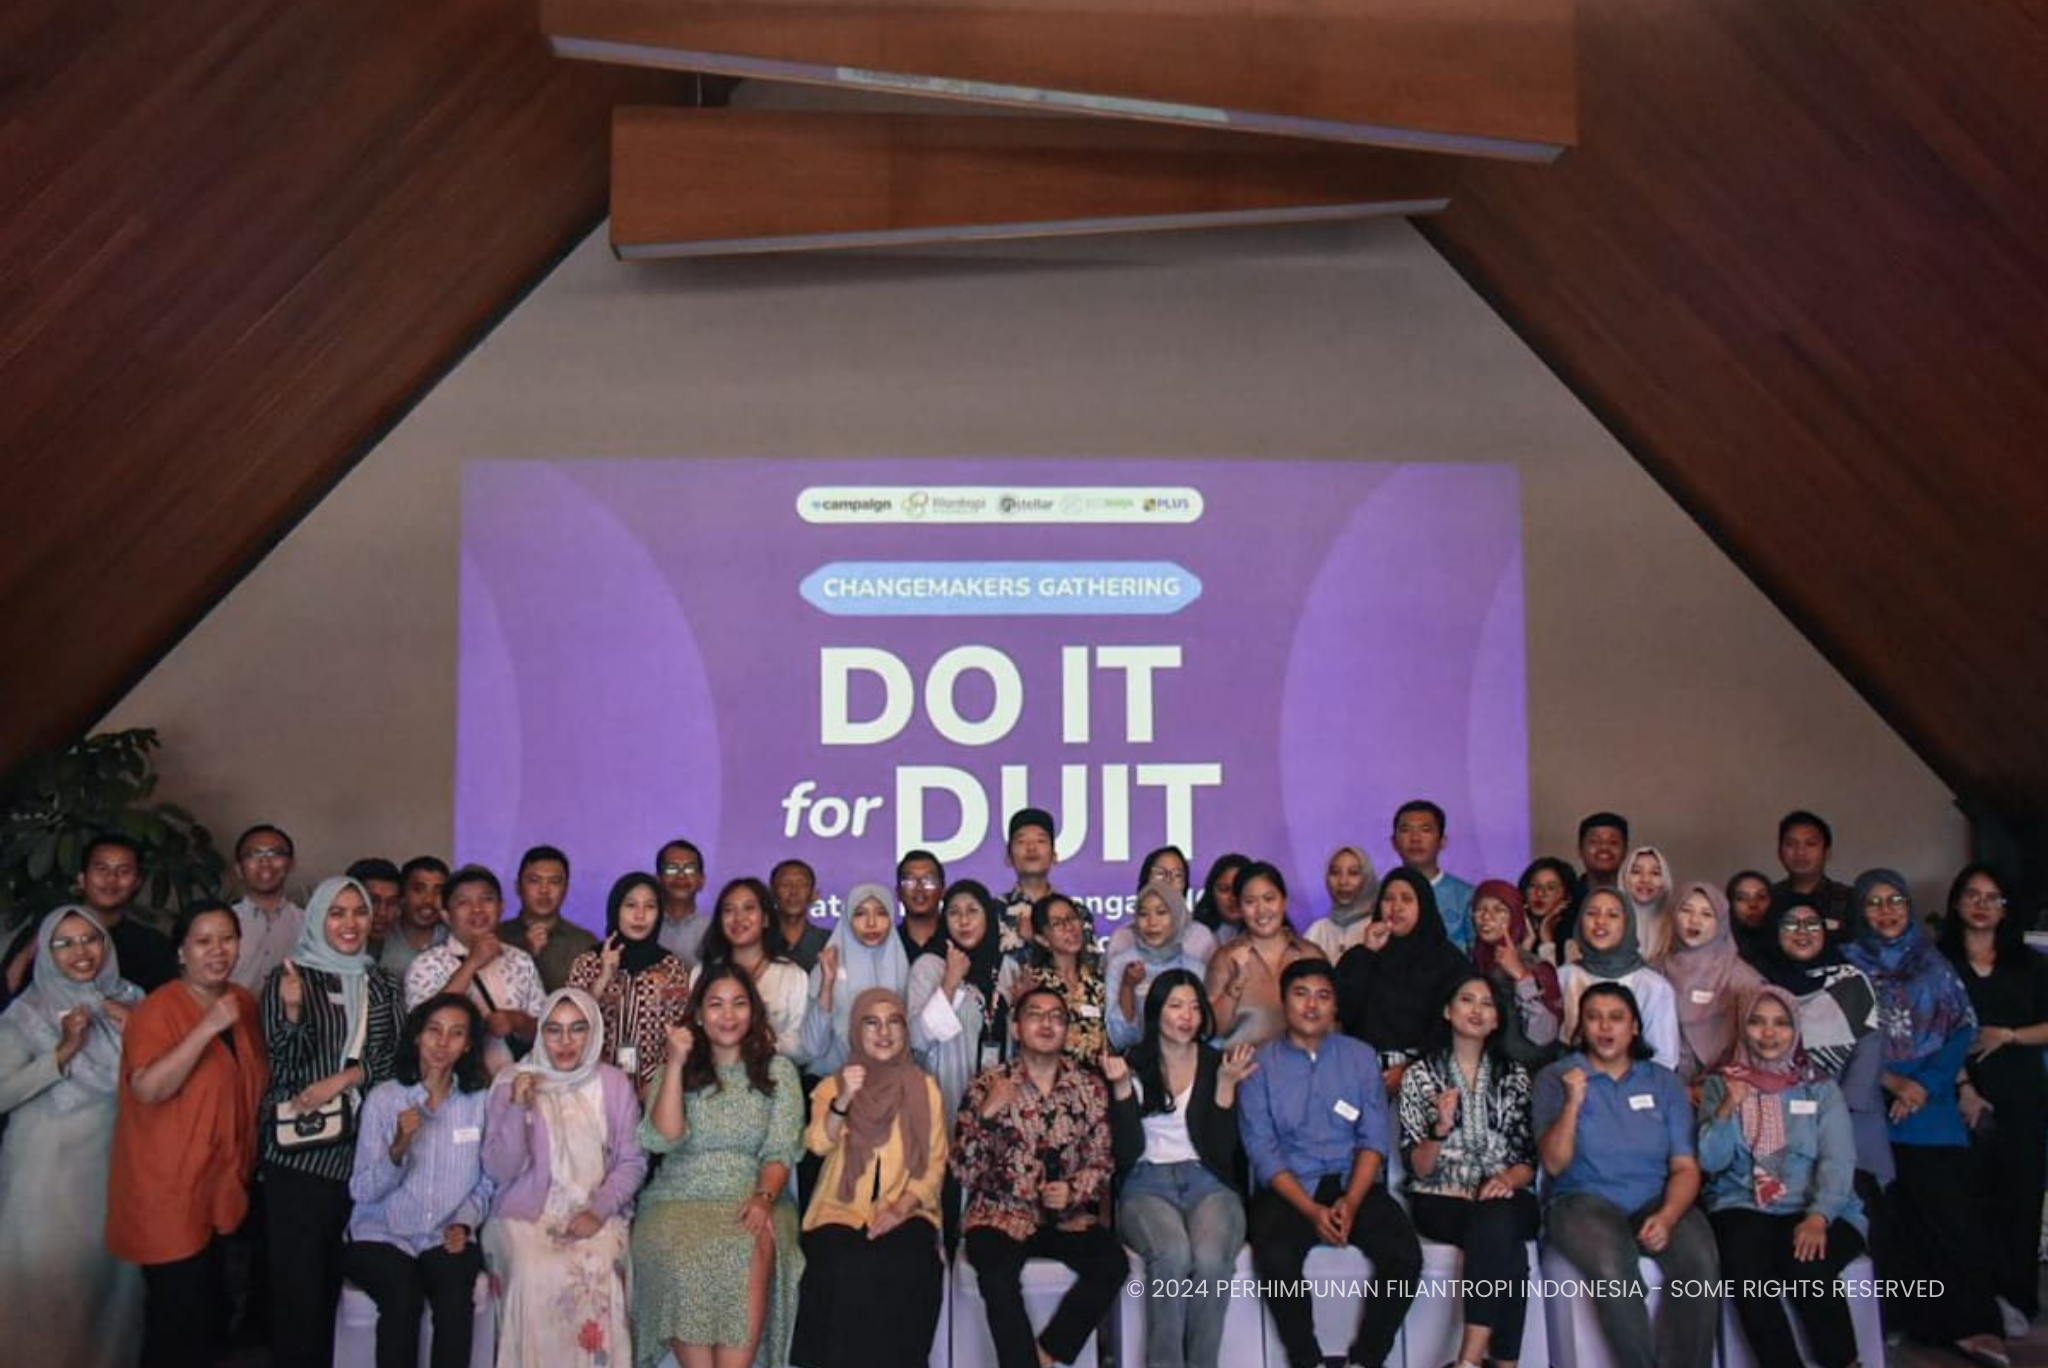 Changemakers Gathering “DO IT for DUIT: Strategi Kelola Keuangan NGO Biar Gak Boncos”